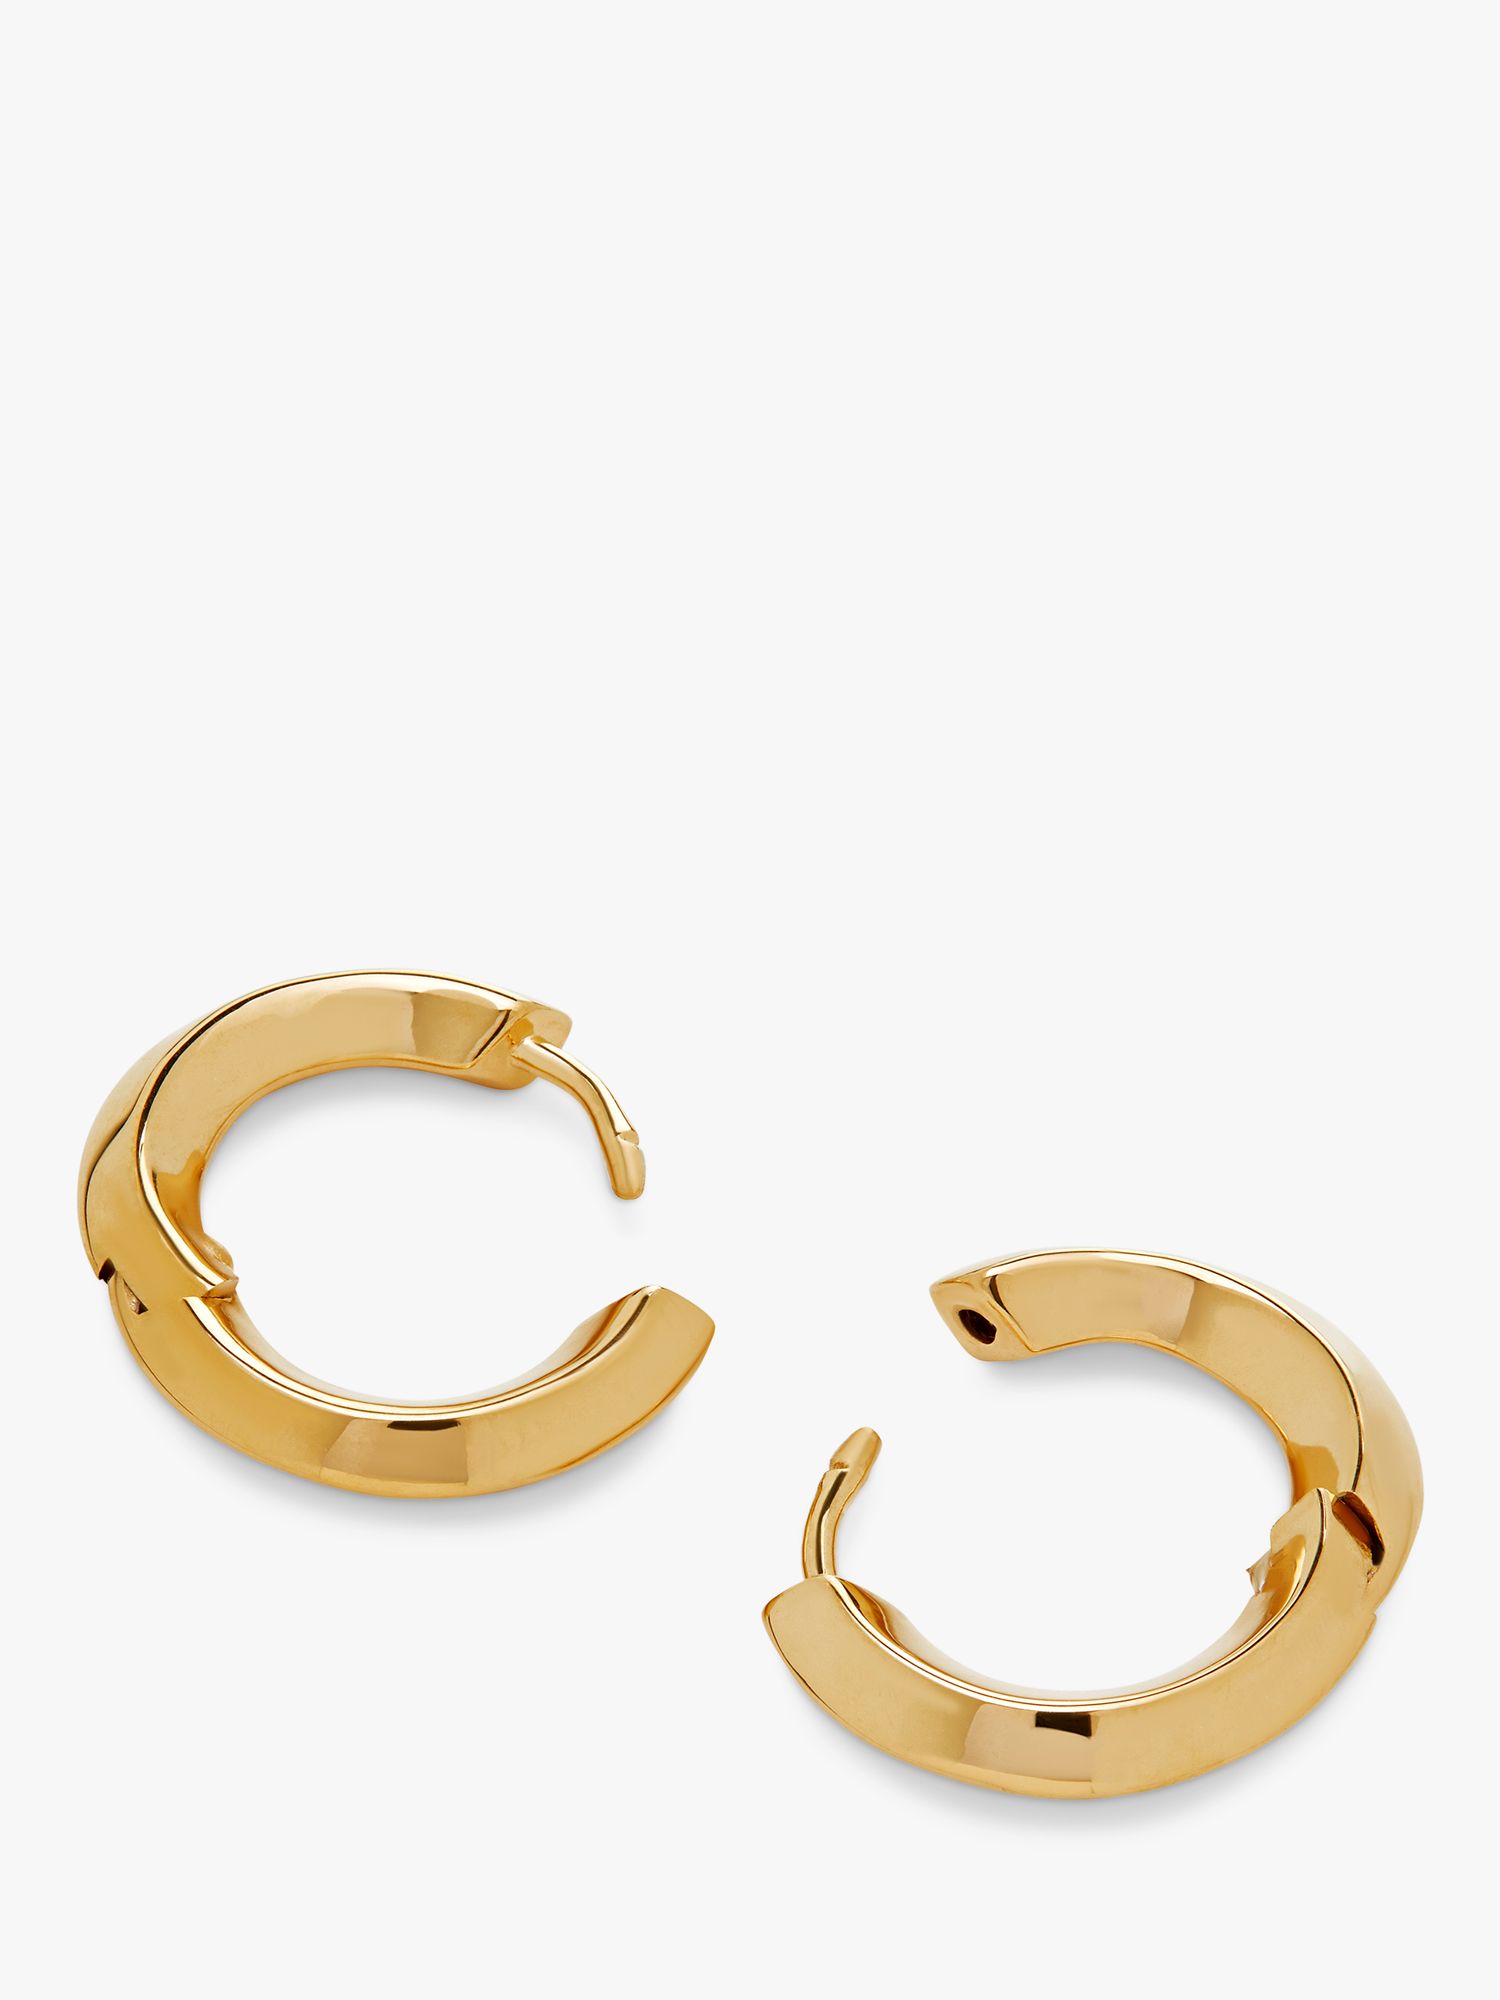 Monica Vinader Power Small Hoop Earrings, Gold at John Lewis & Partners